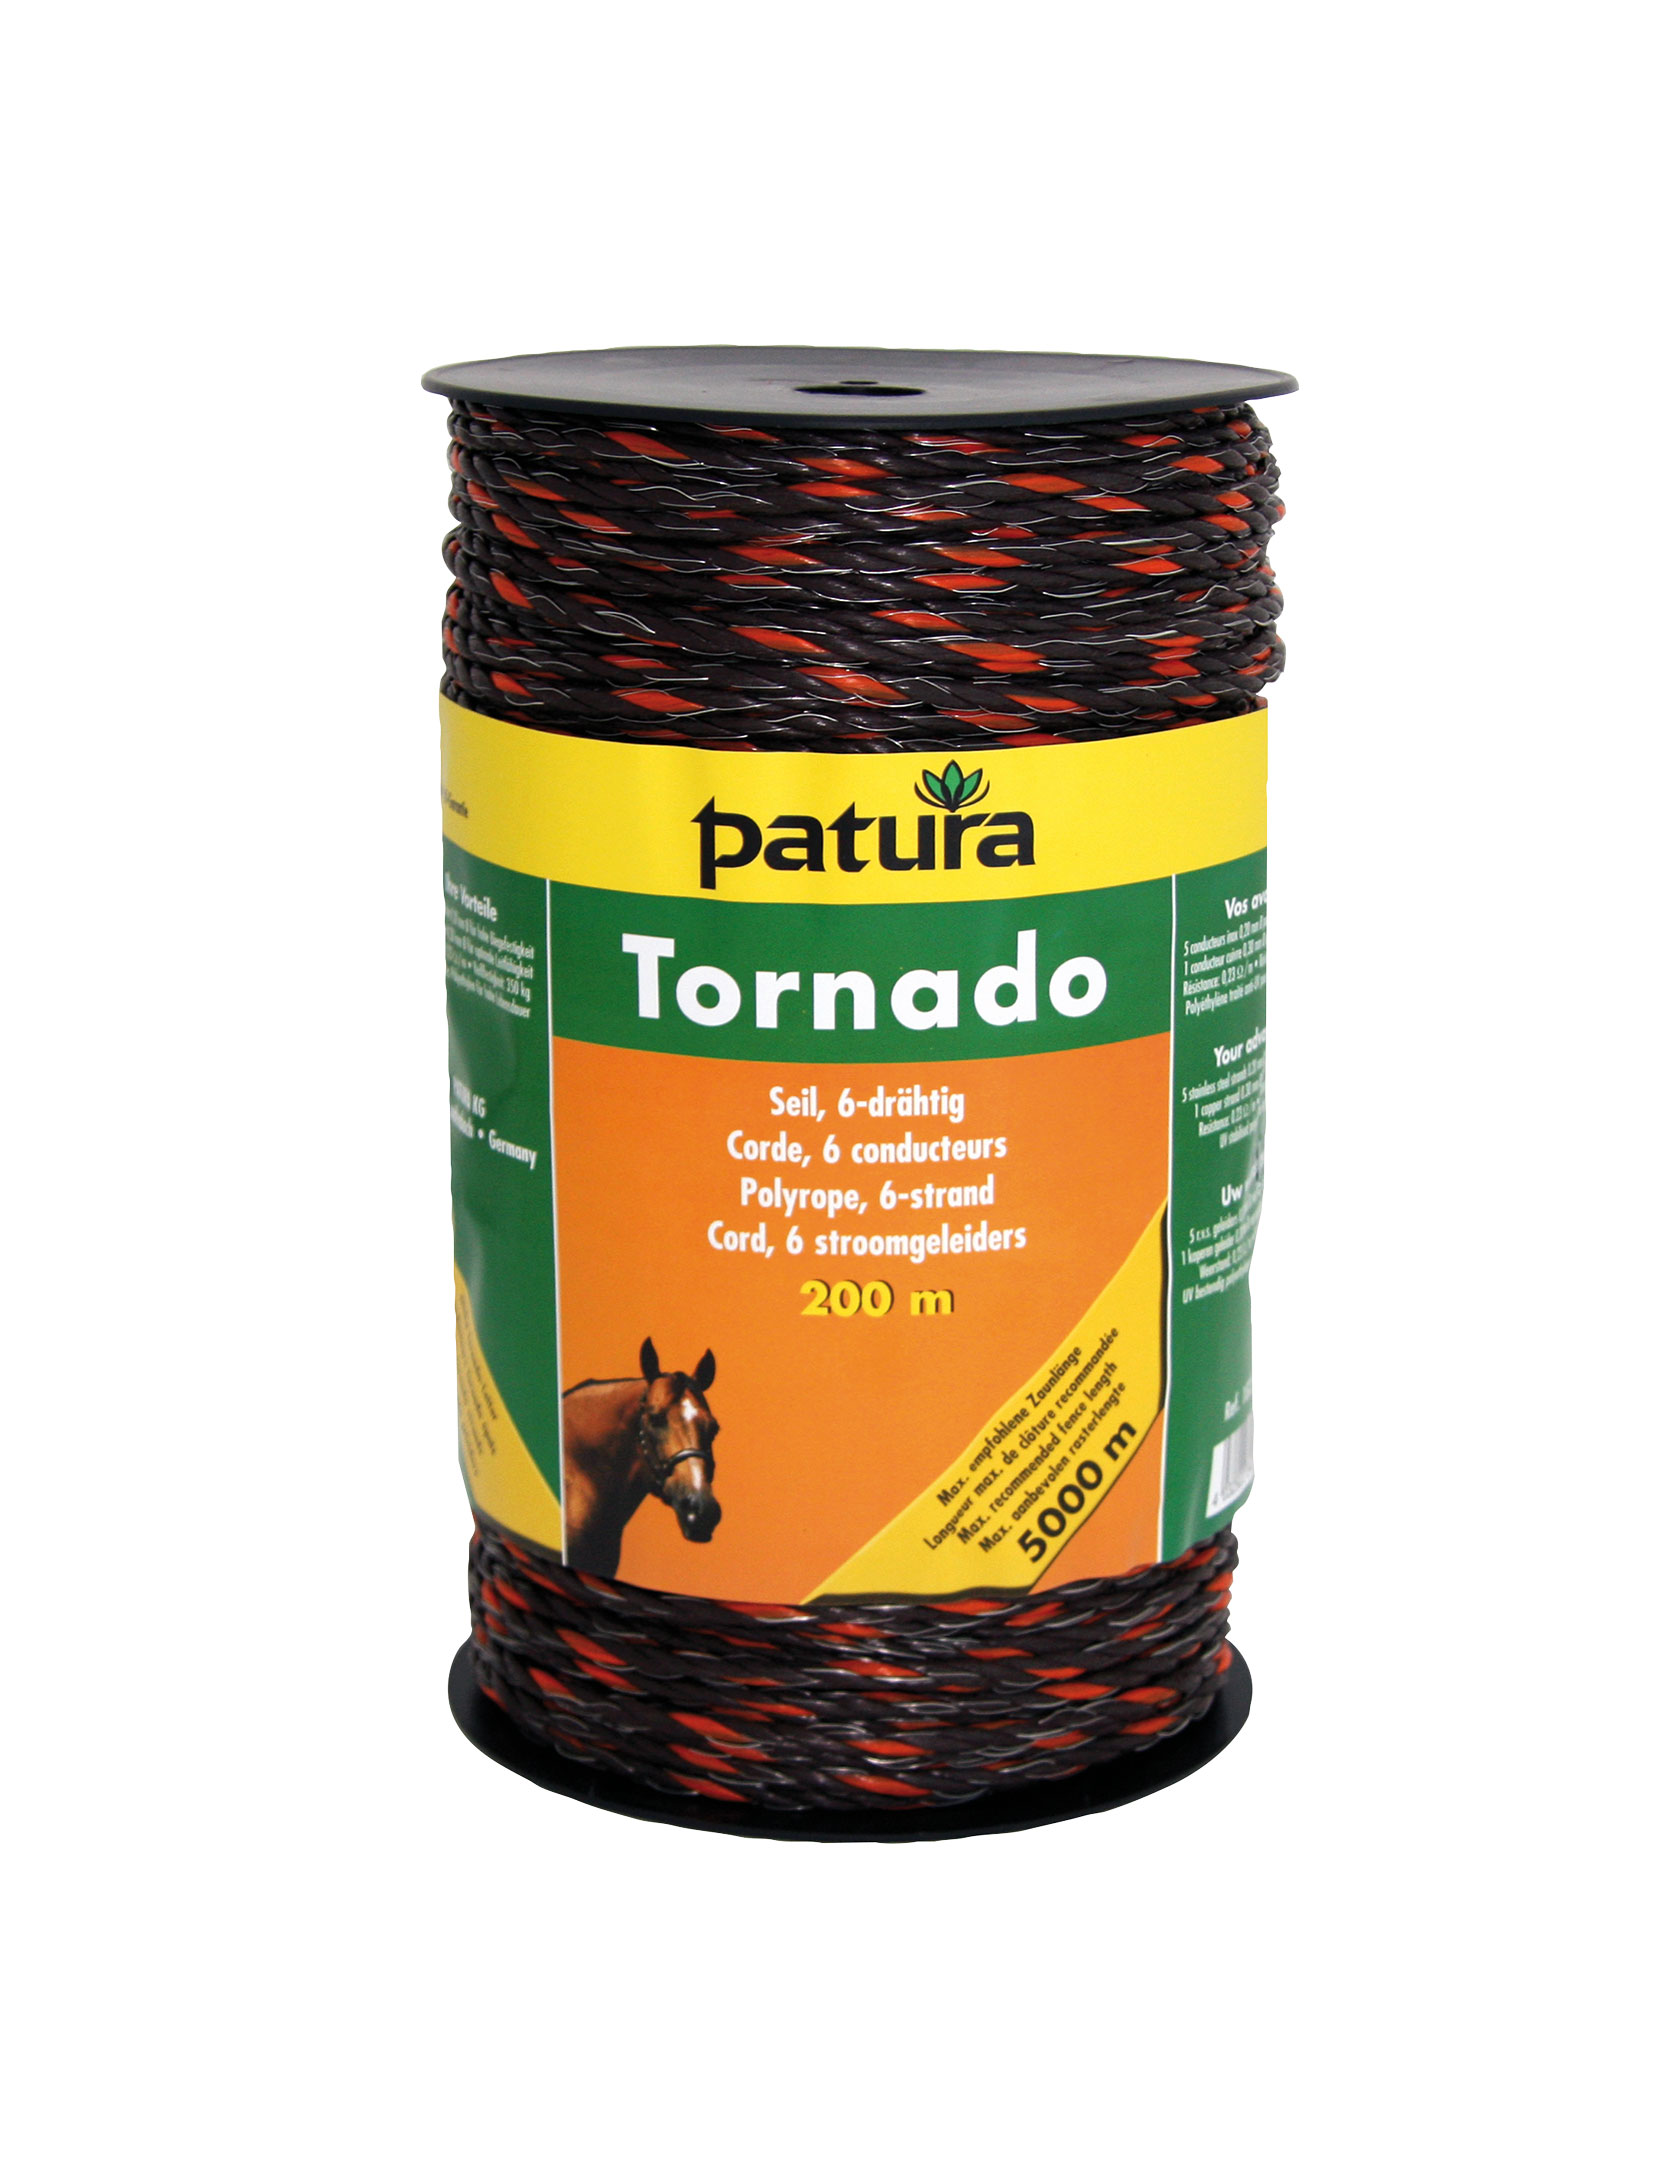 PATURA Tornado Seil - 200 m braun